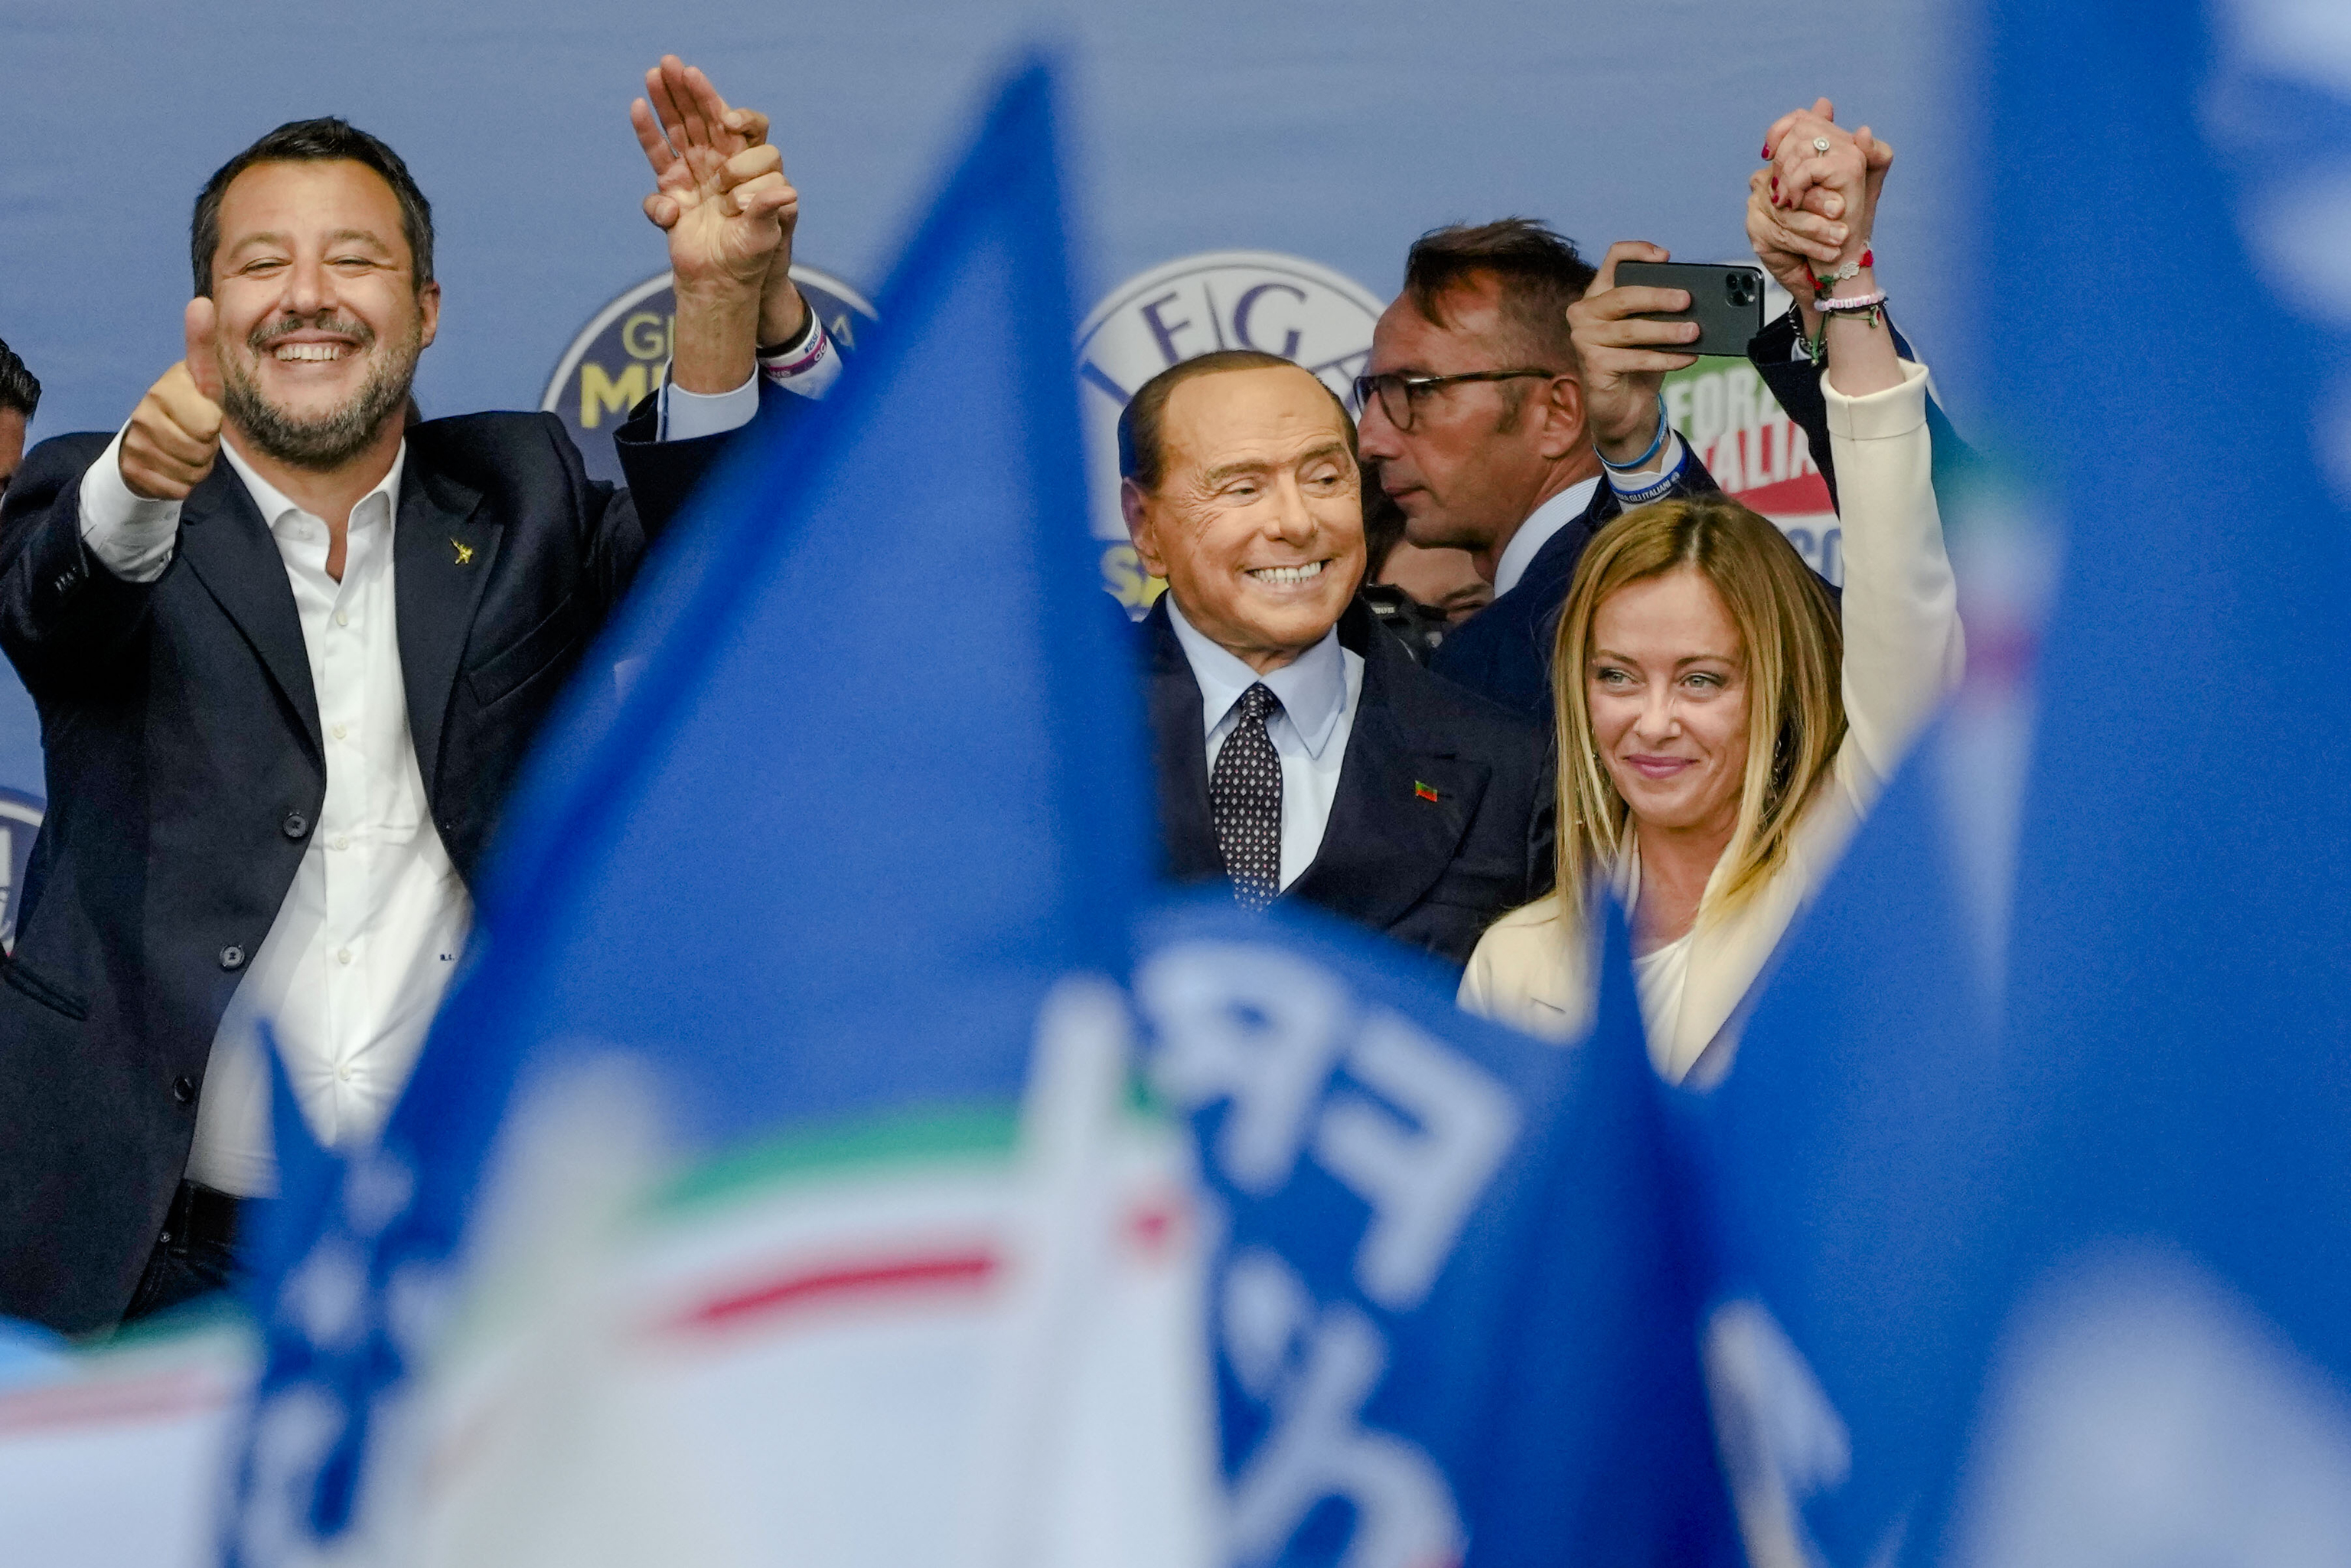 La derecha dura de Meloni vence en Italia y sacude la Unión Europea